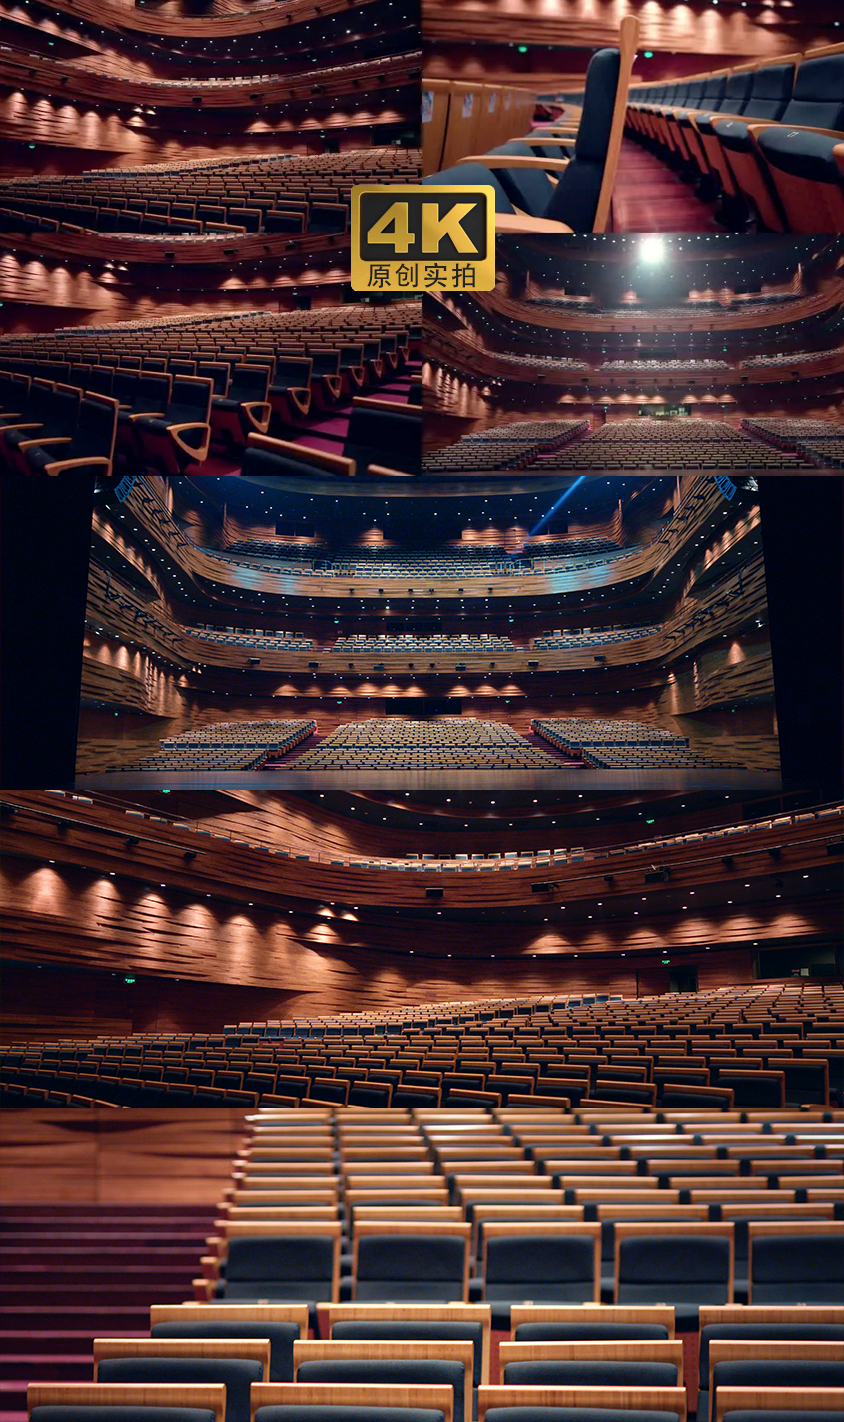 4K-高级会议中心大剧院演出大舞台